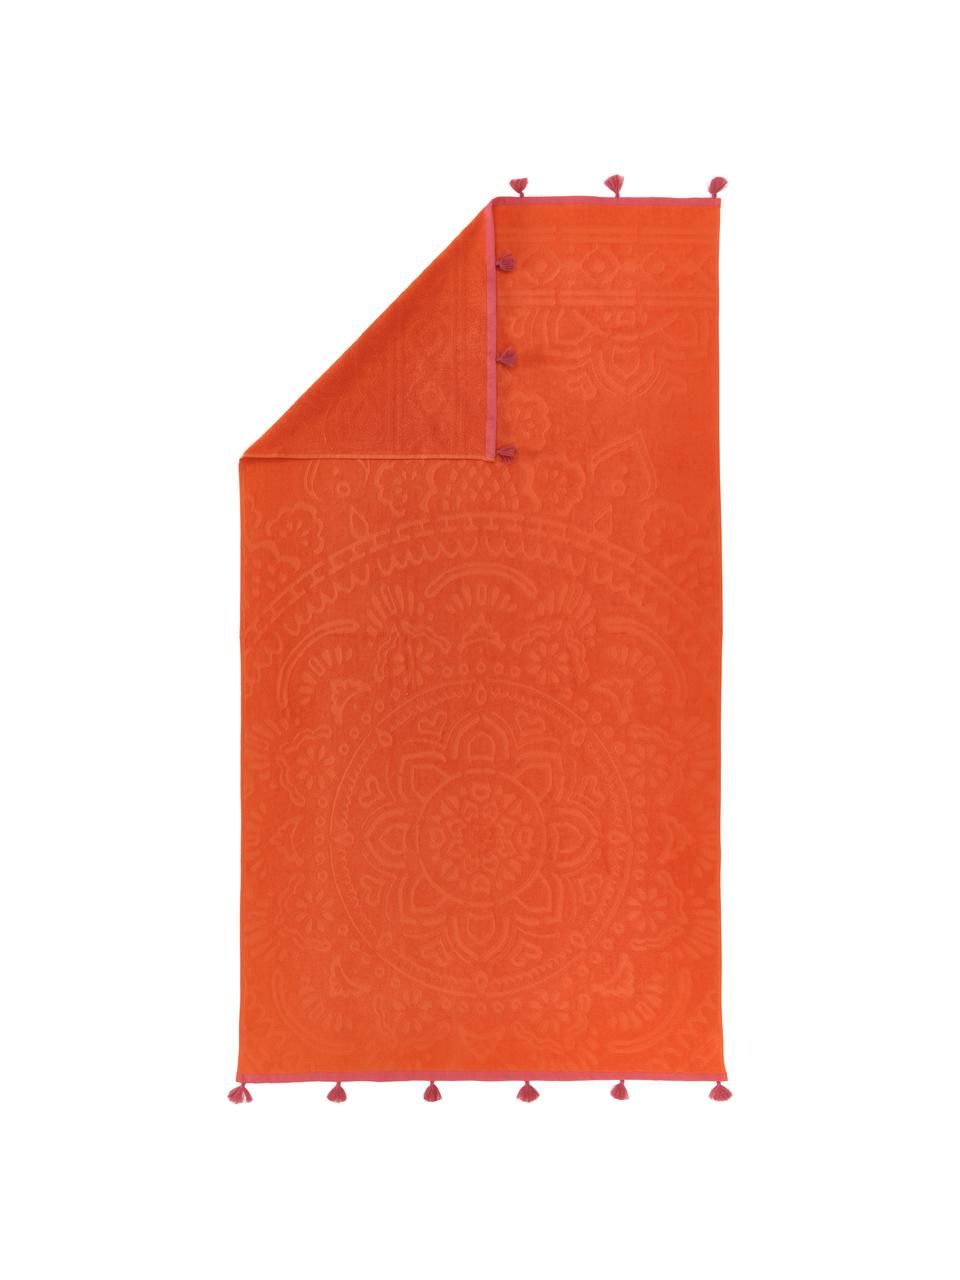 Serviette de plage orange Mandala, 100 % coton, Orange, rose, larg. 90 x long. 160 cm